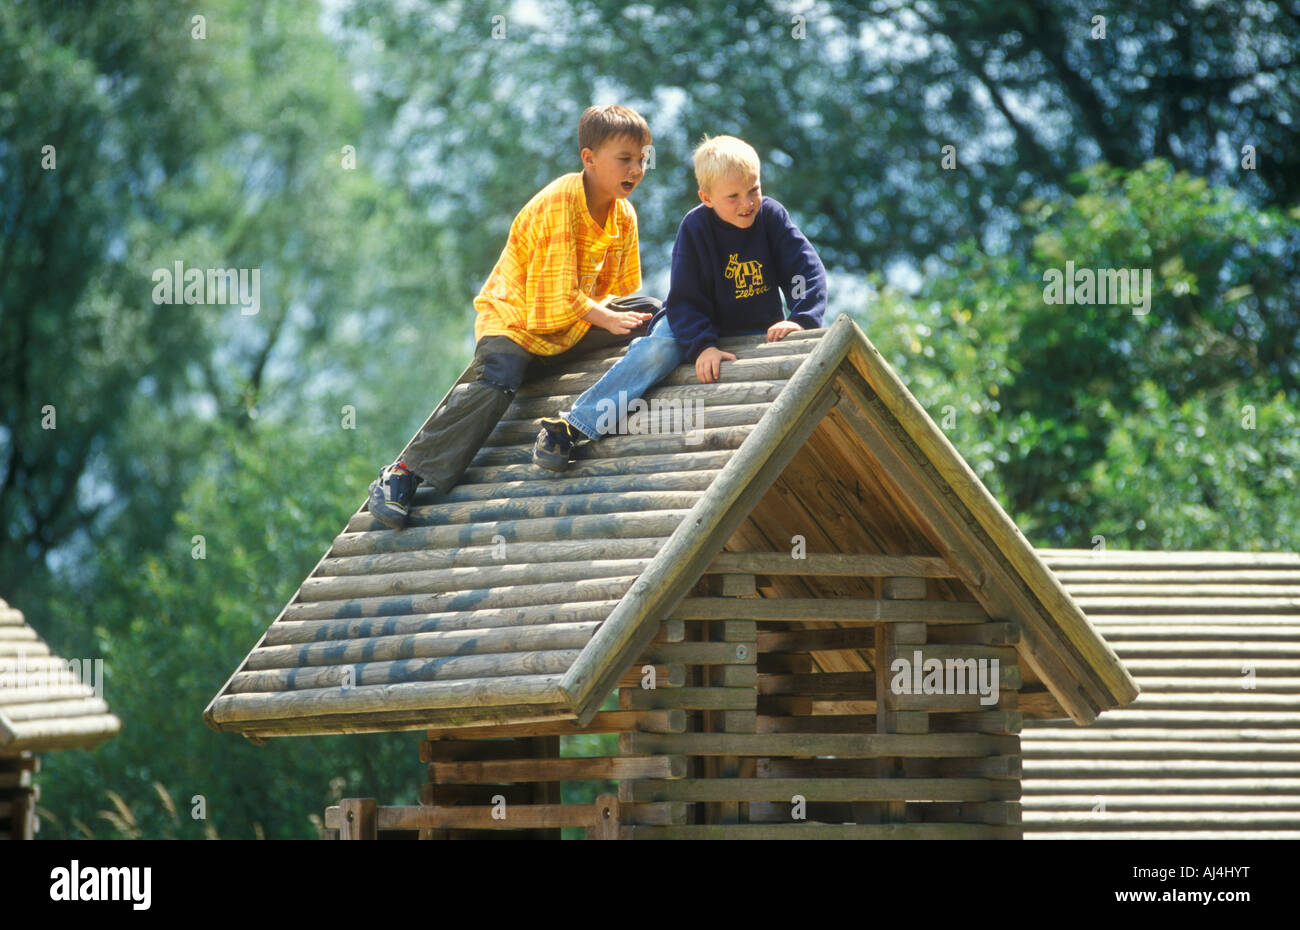 zwei Jungen spielen auf eine Holzhütte auf einem Kinderspielplatz Stockfoto